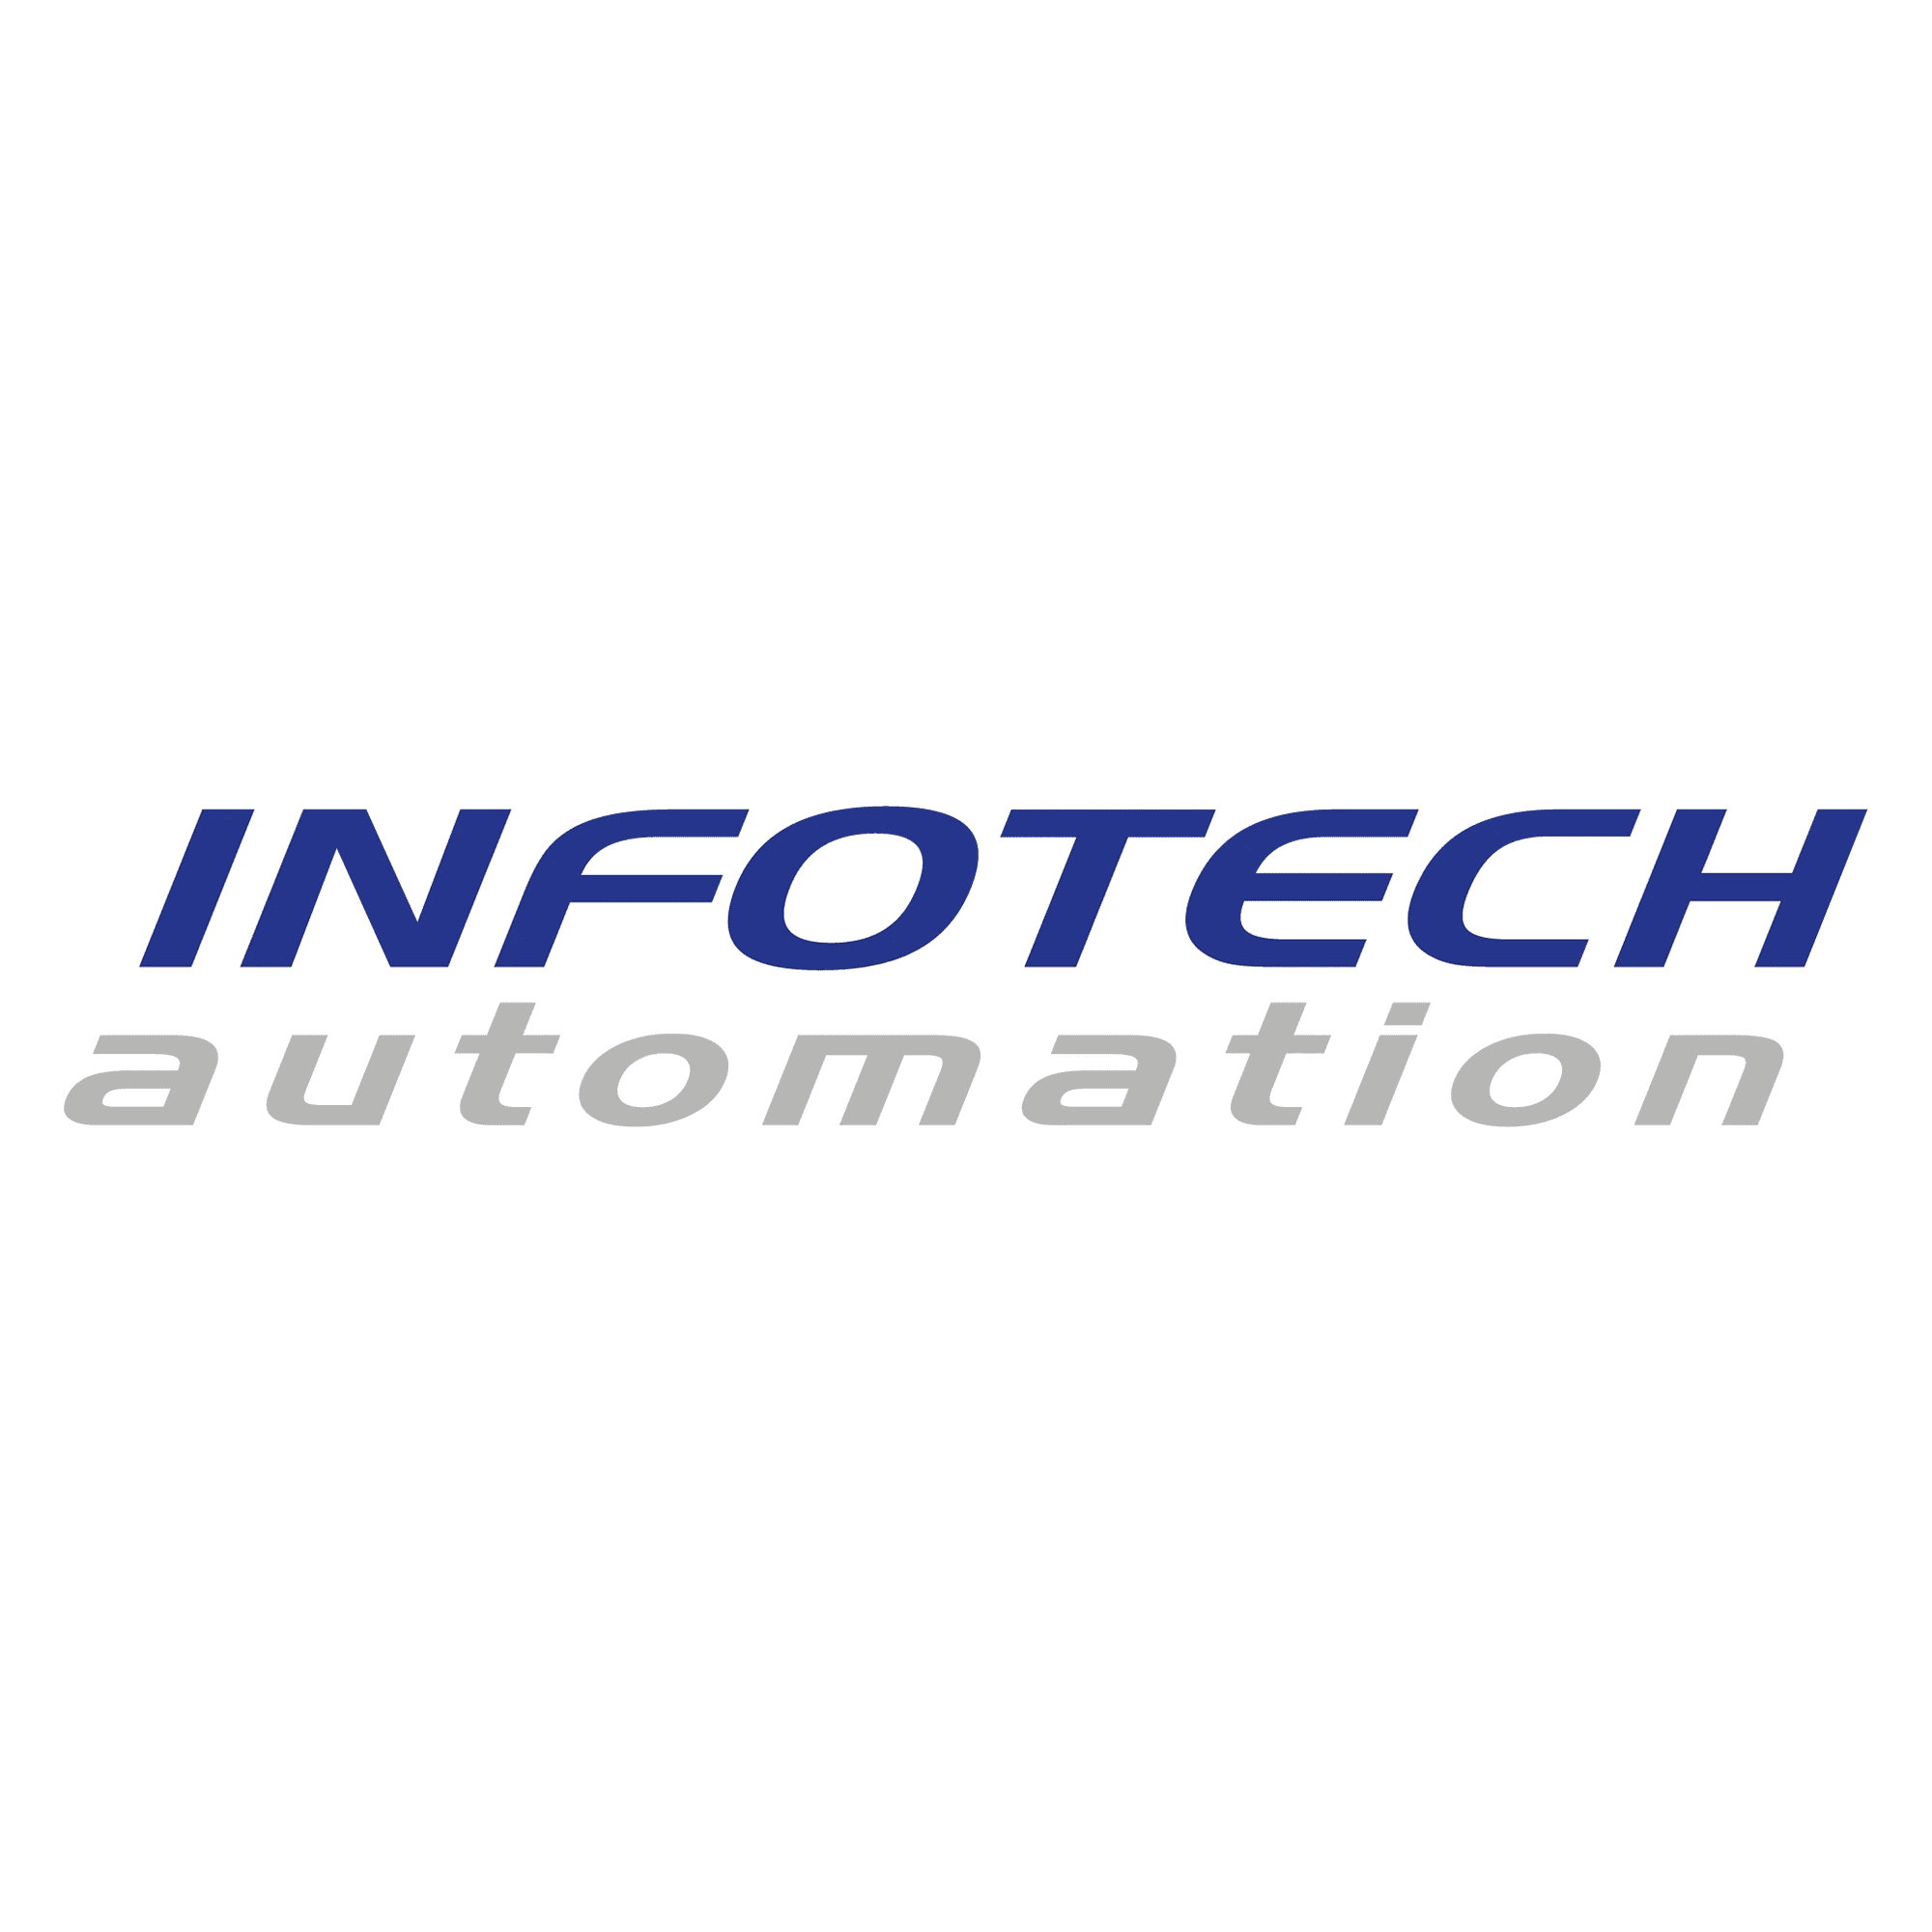 Infotech AG